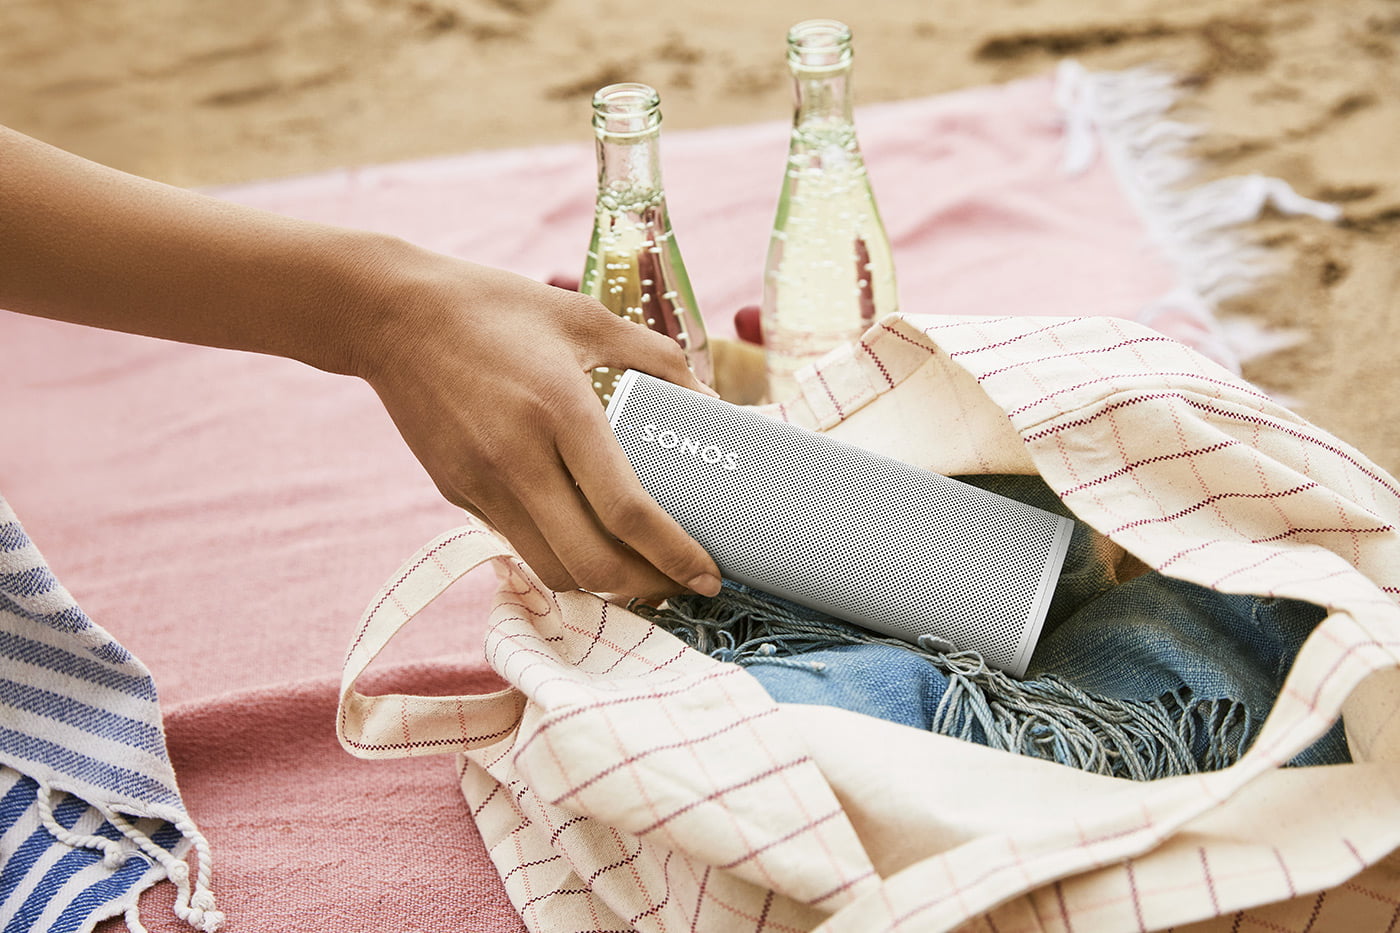 L'enceinte portable Sonos Roam fait le lien entre le Bluetooth nomade et le multiroom WiFi